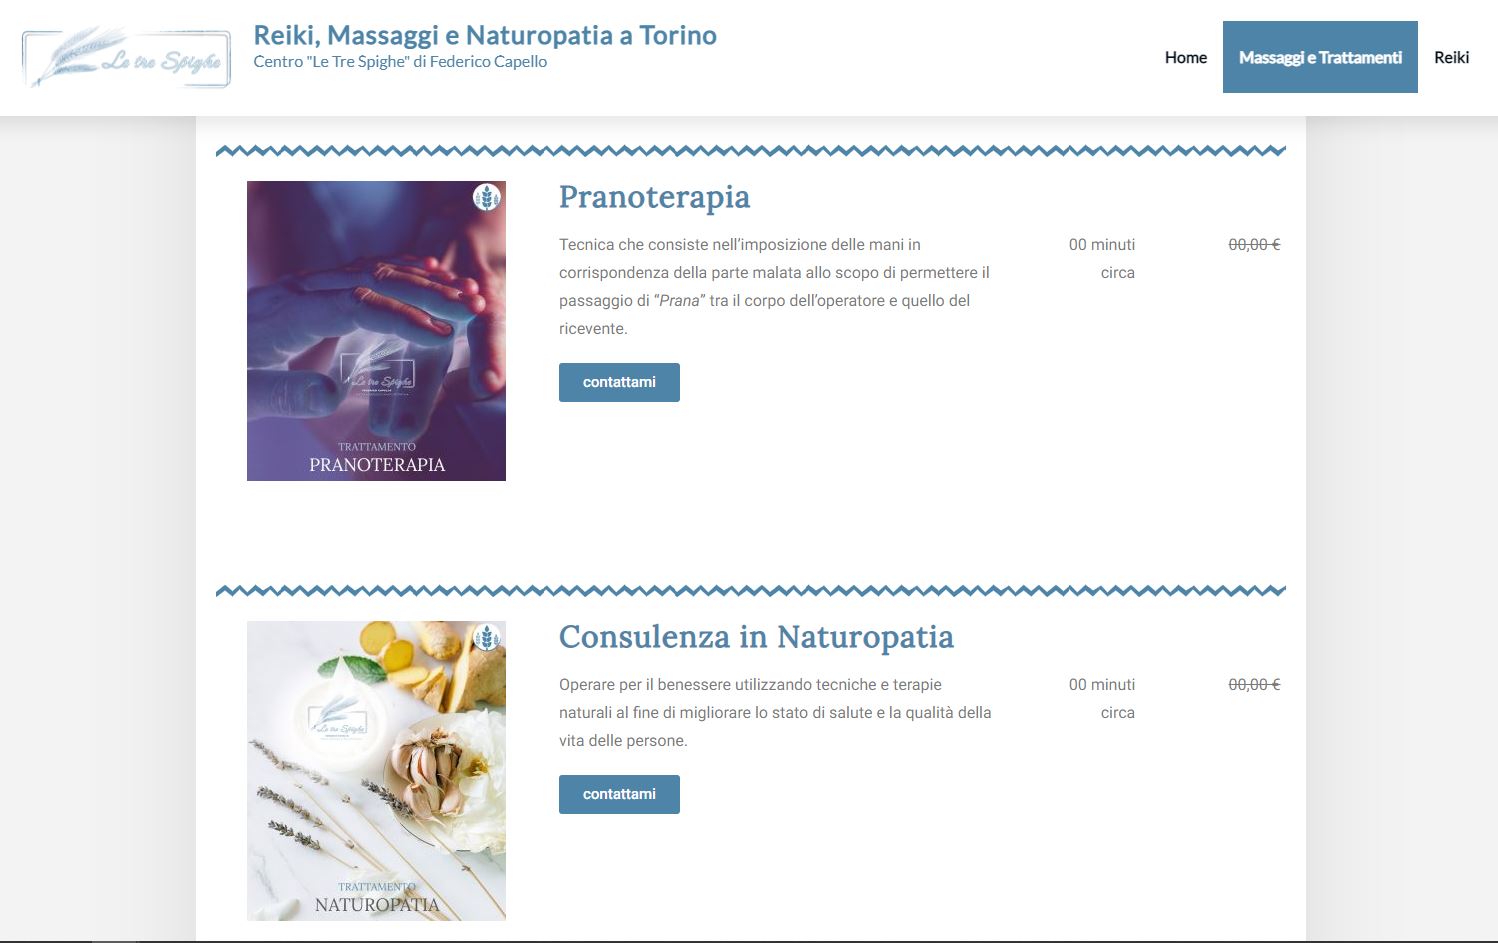 Trattamento di Pranoterapia e Consulenza in Naturopatia (Screenshot Pagina Massaggi e Trattamenti).